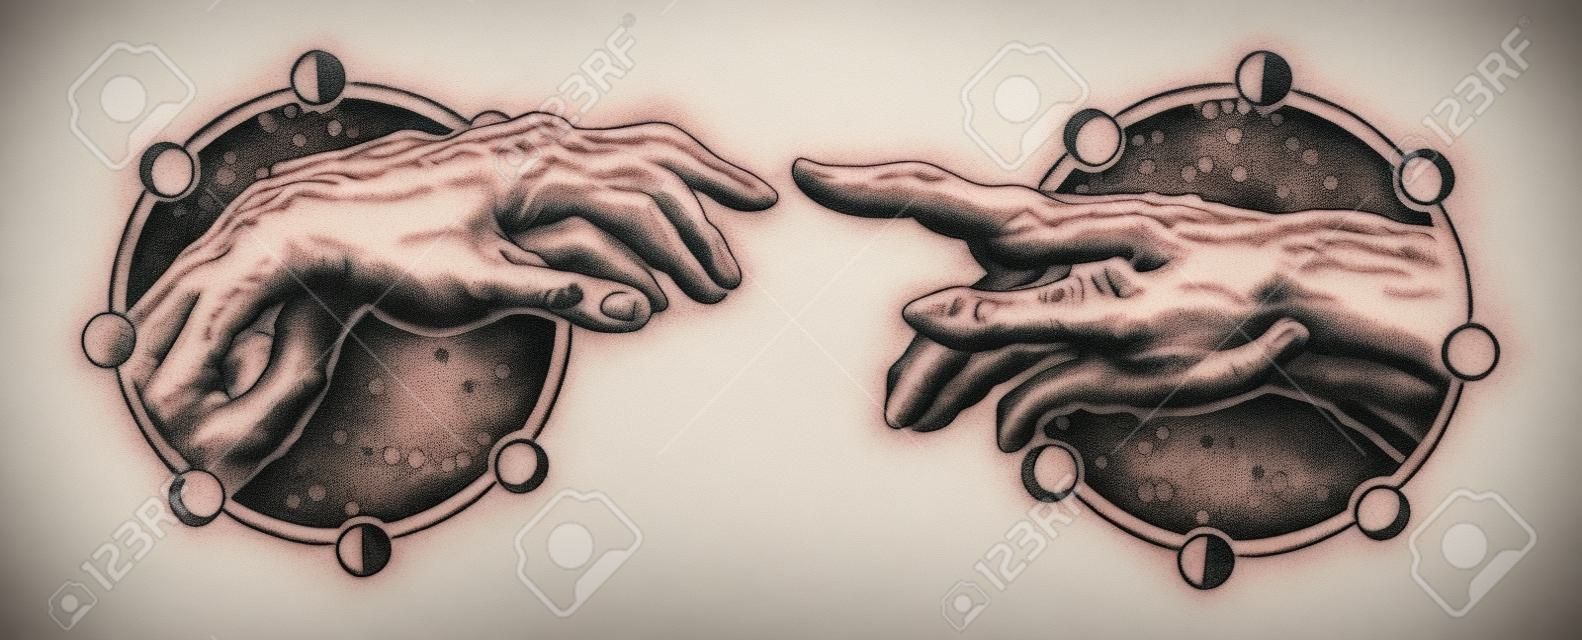 Michelangelo Gottes Berührung. Menschliche Hände, die mit Tätowierung- und T-Shirtdesign der Finger berühren. Hände Tattoo Renaissance. Götter und Adam, Symbol der Spiritualität, Religion, Verbindung und Interaktion